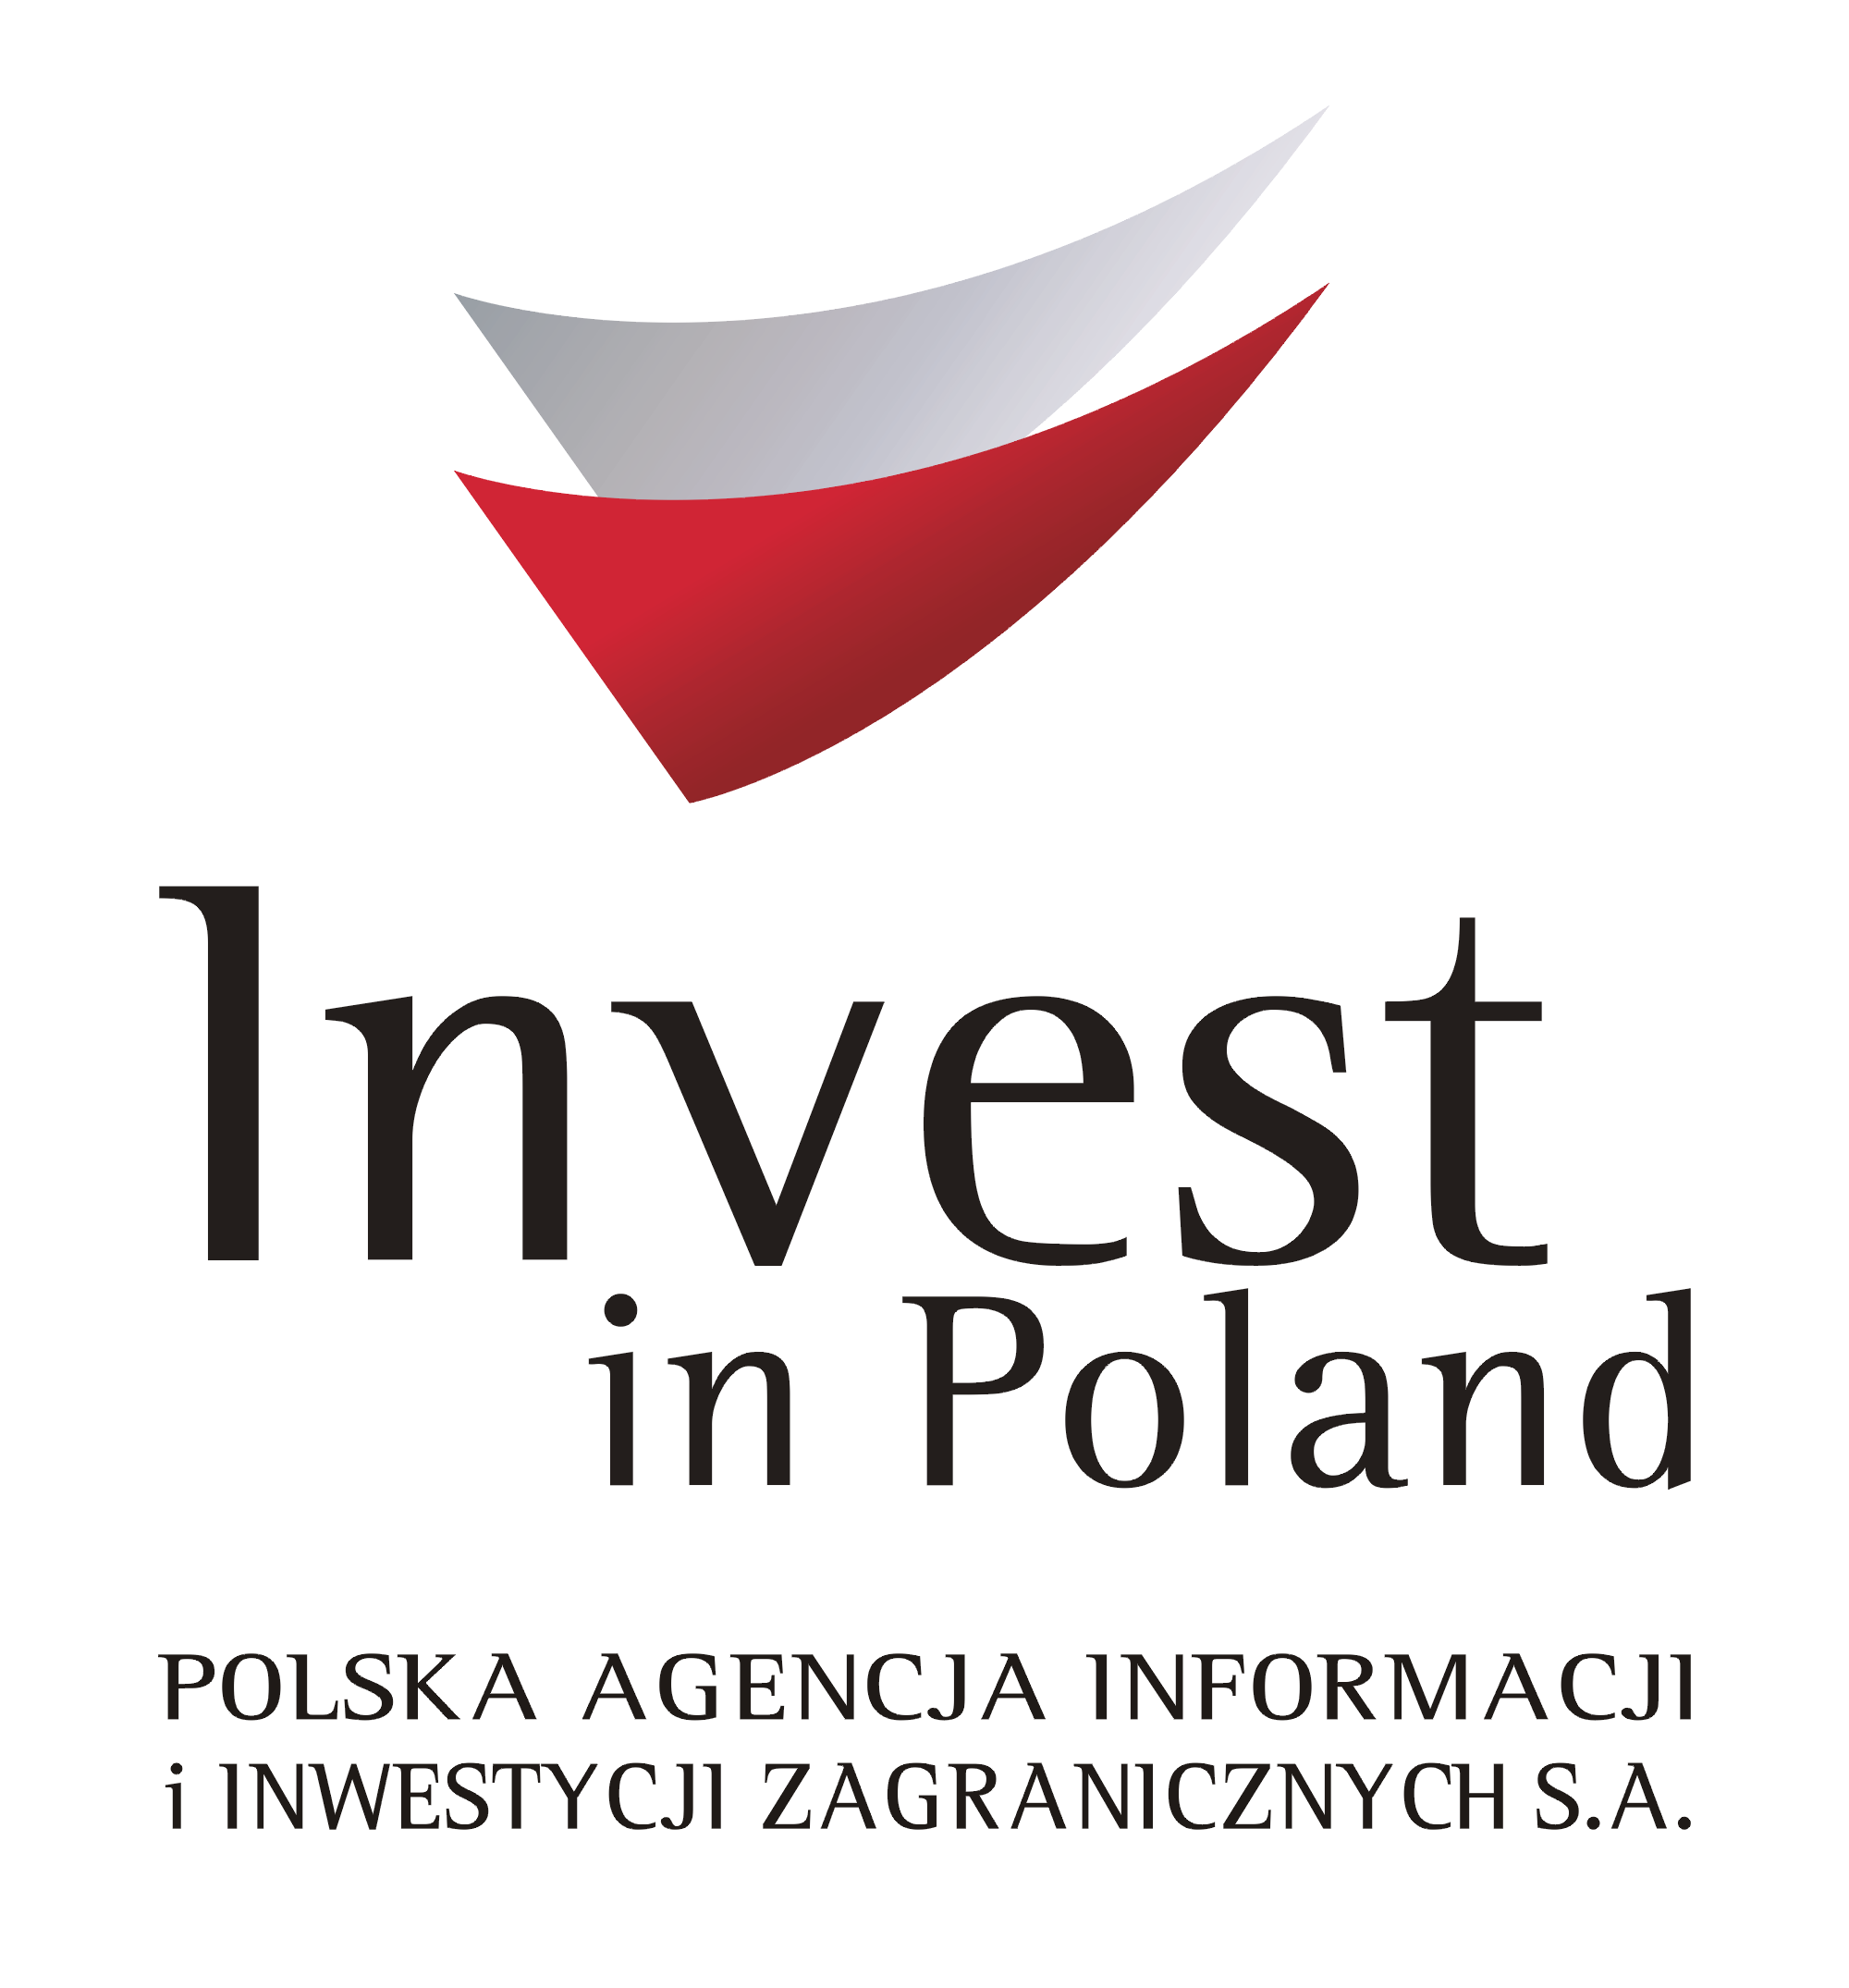 Polska Agencja Informacji I Inwestycji Zagranicznych